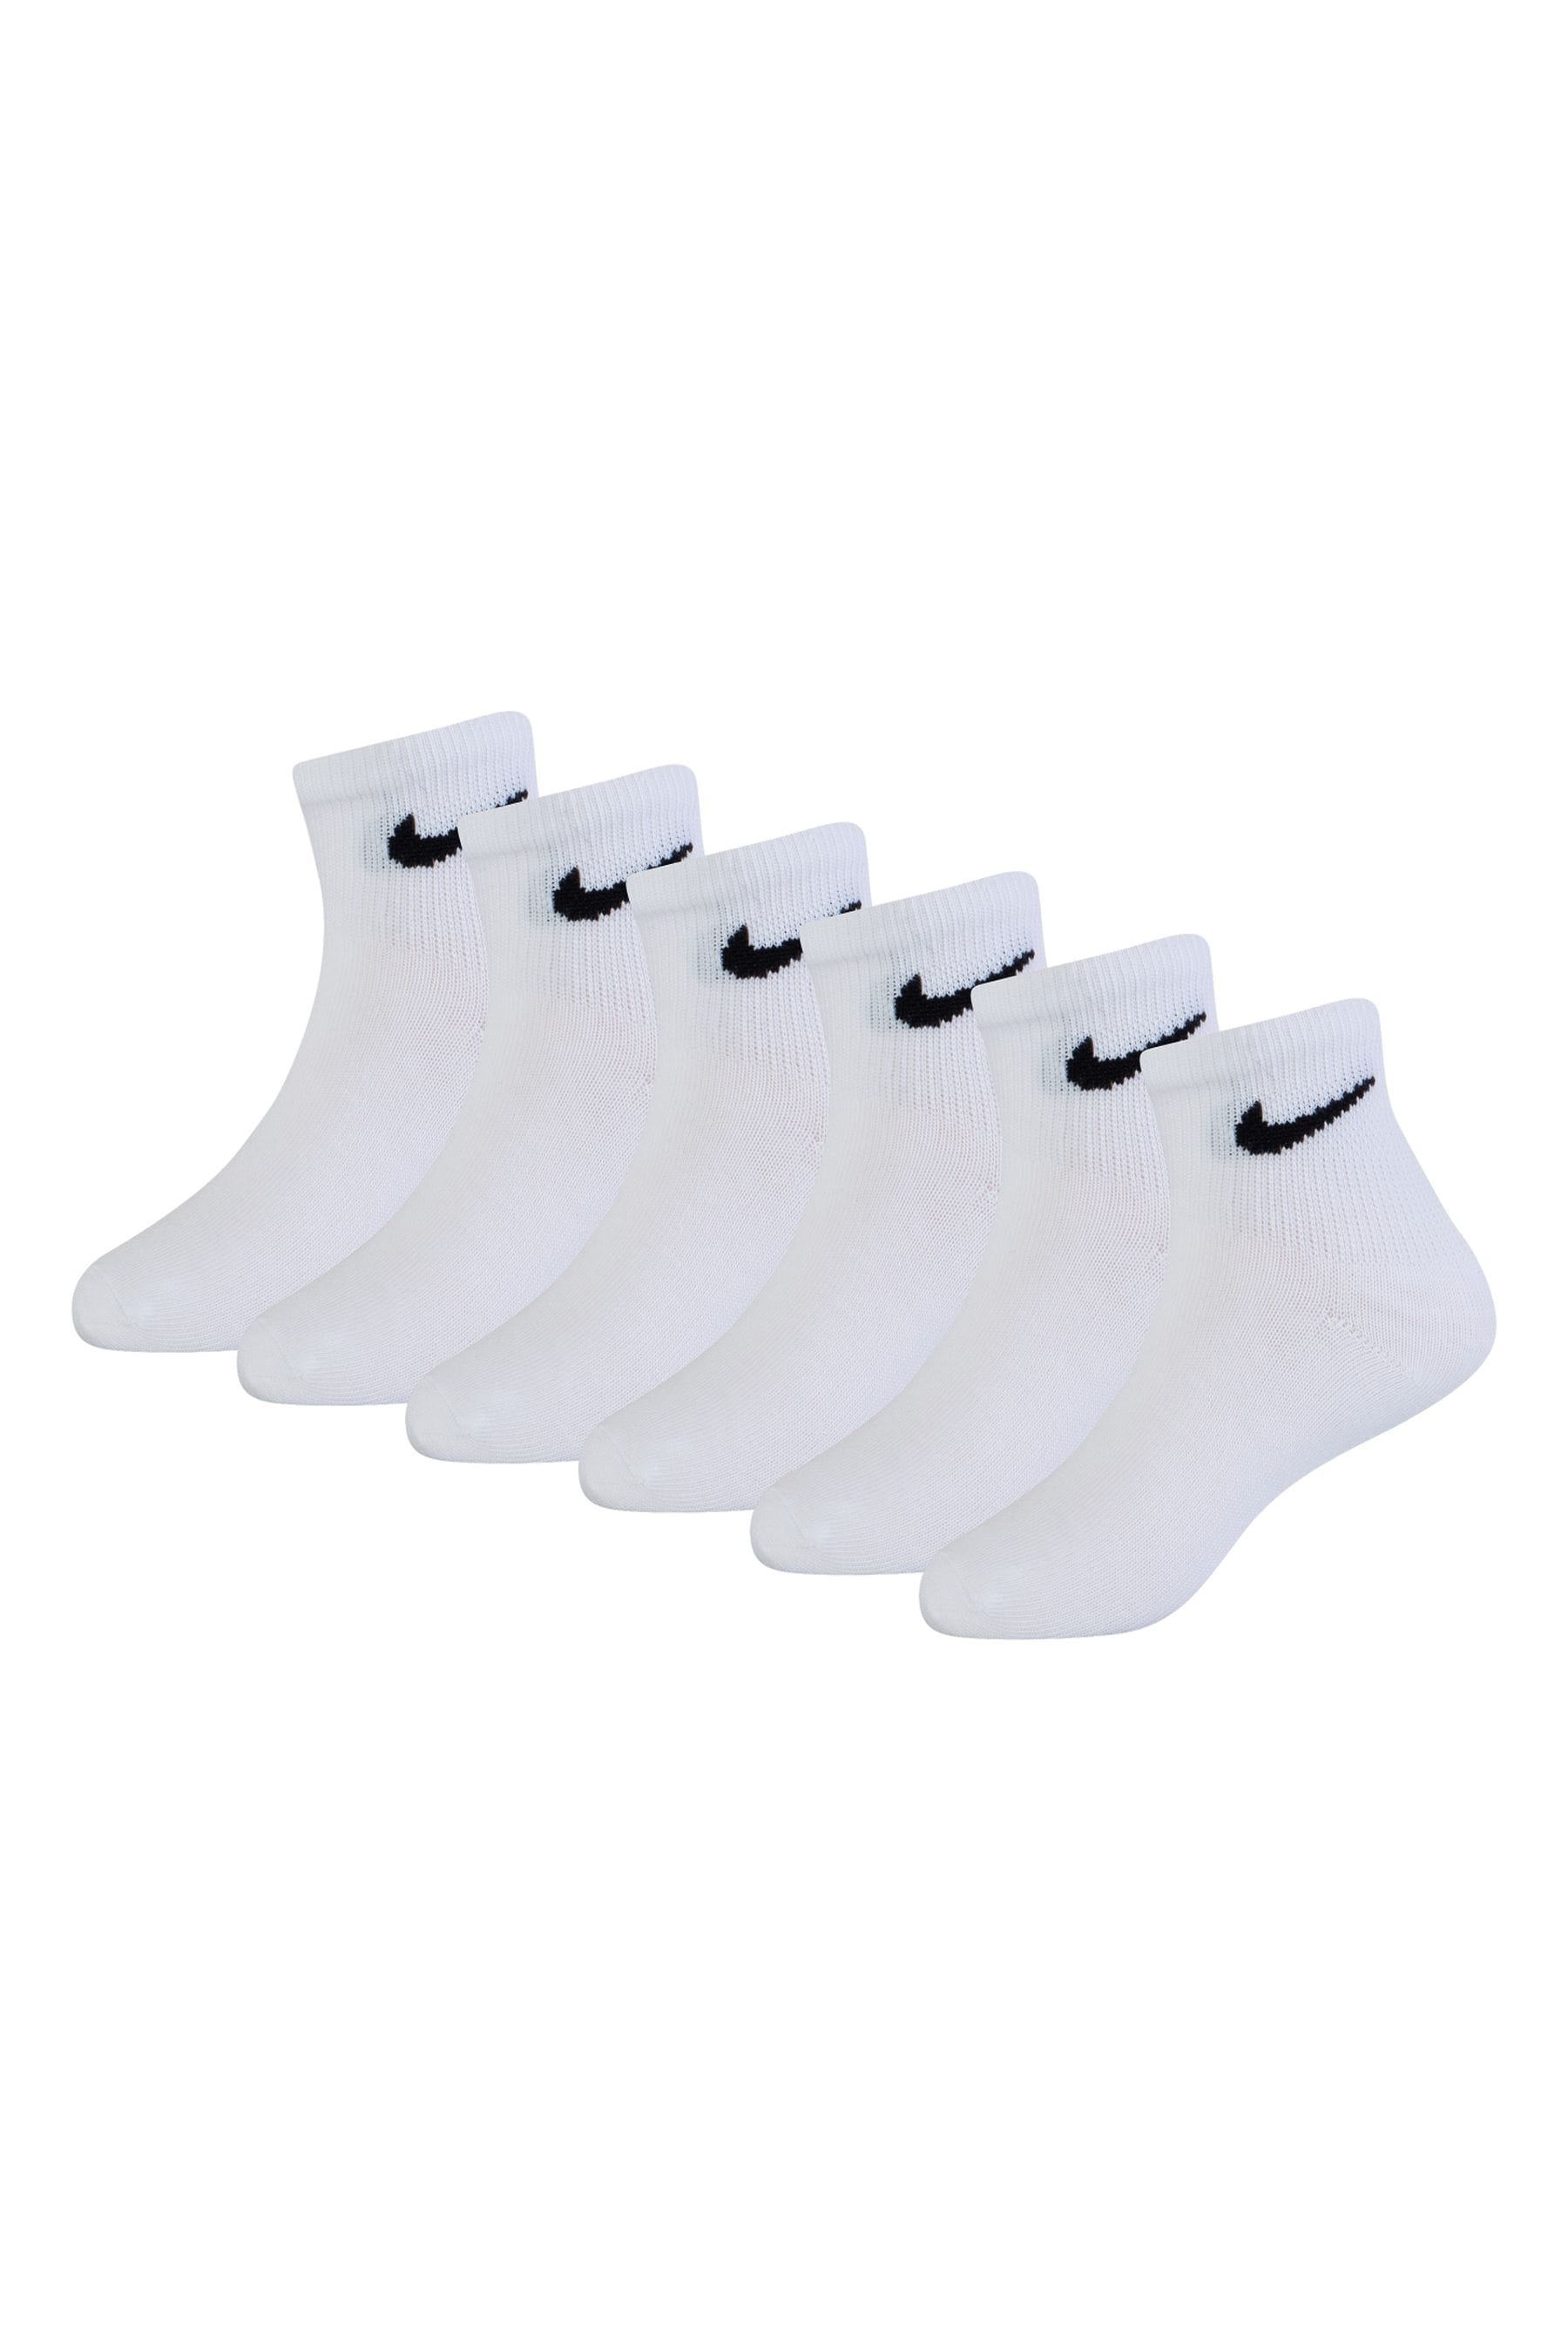 Buy Nike White Mid Socks 6 Pack Little Kids from the Next UK online shop